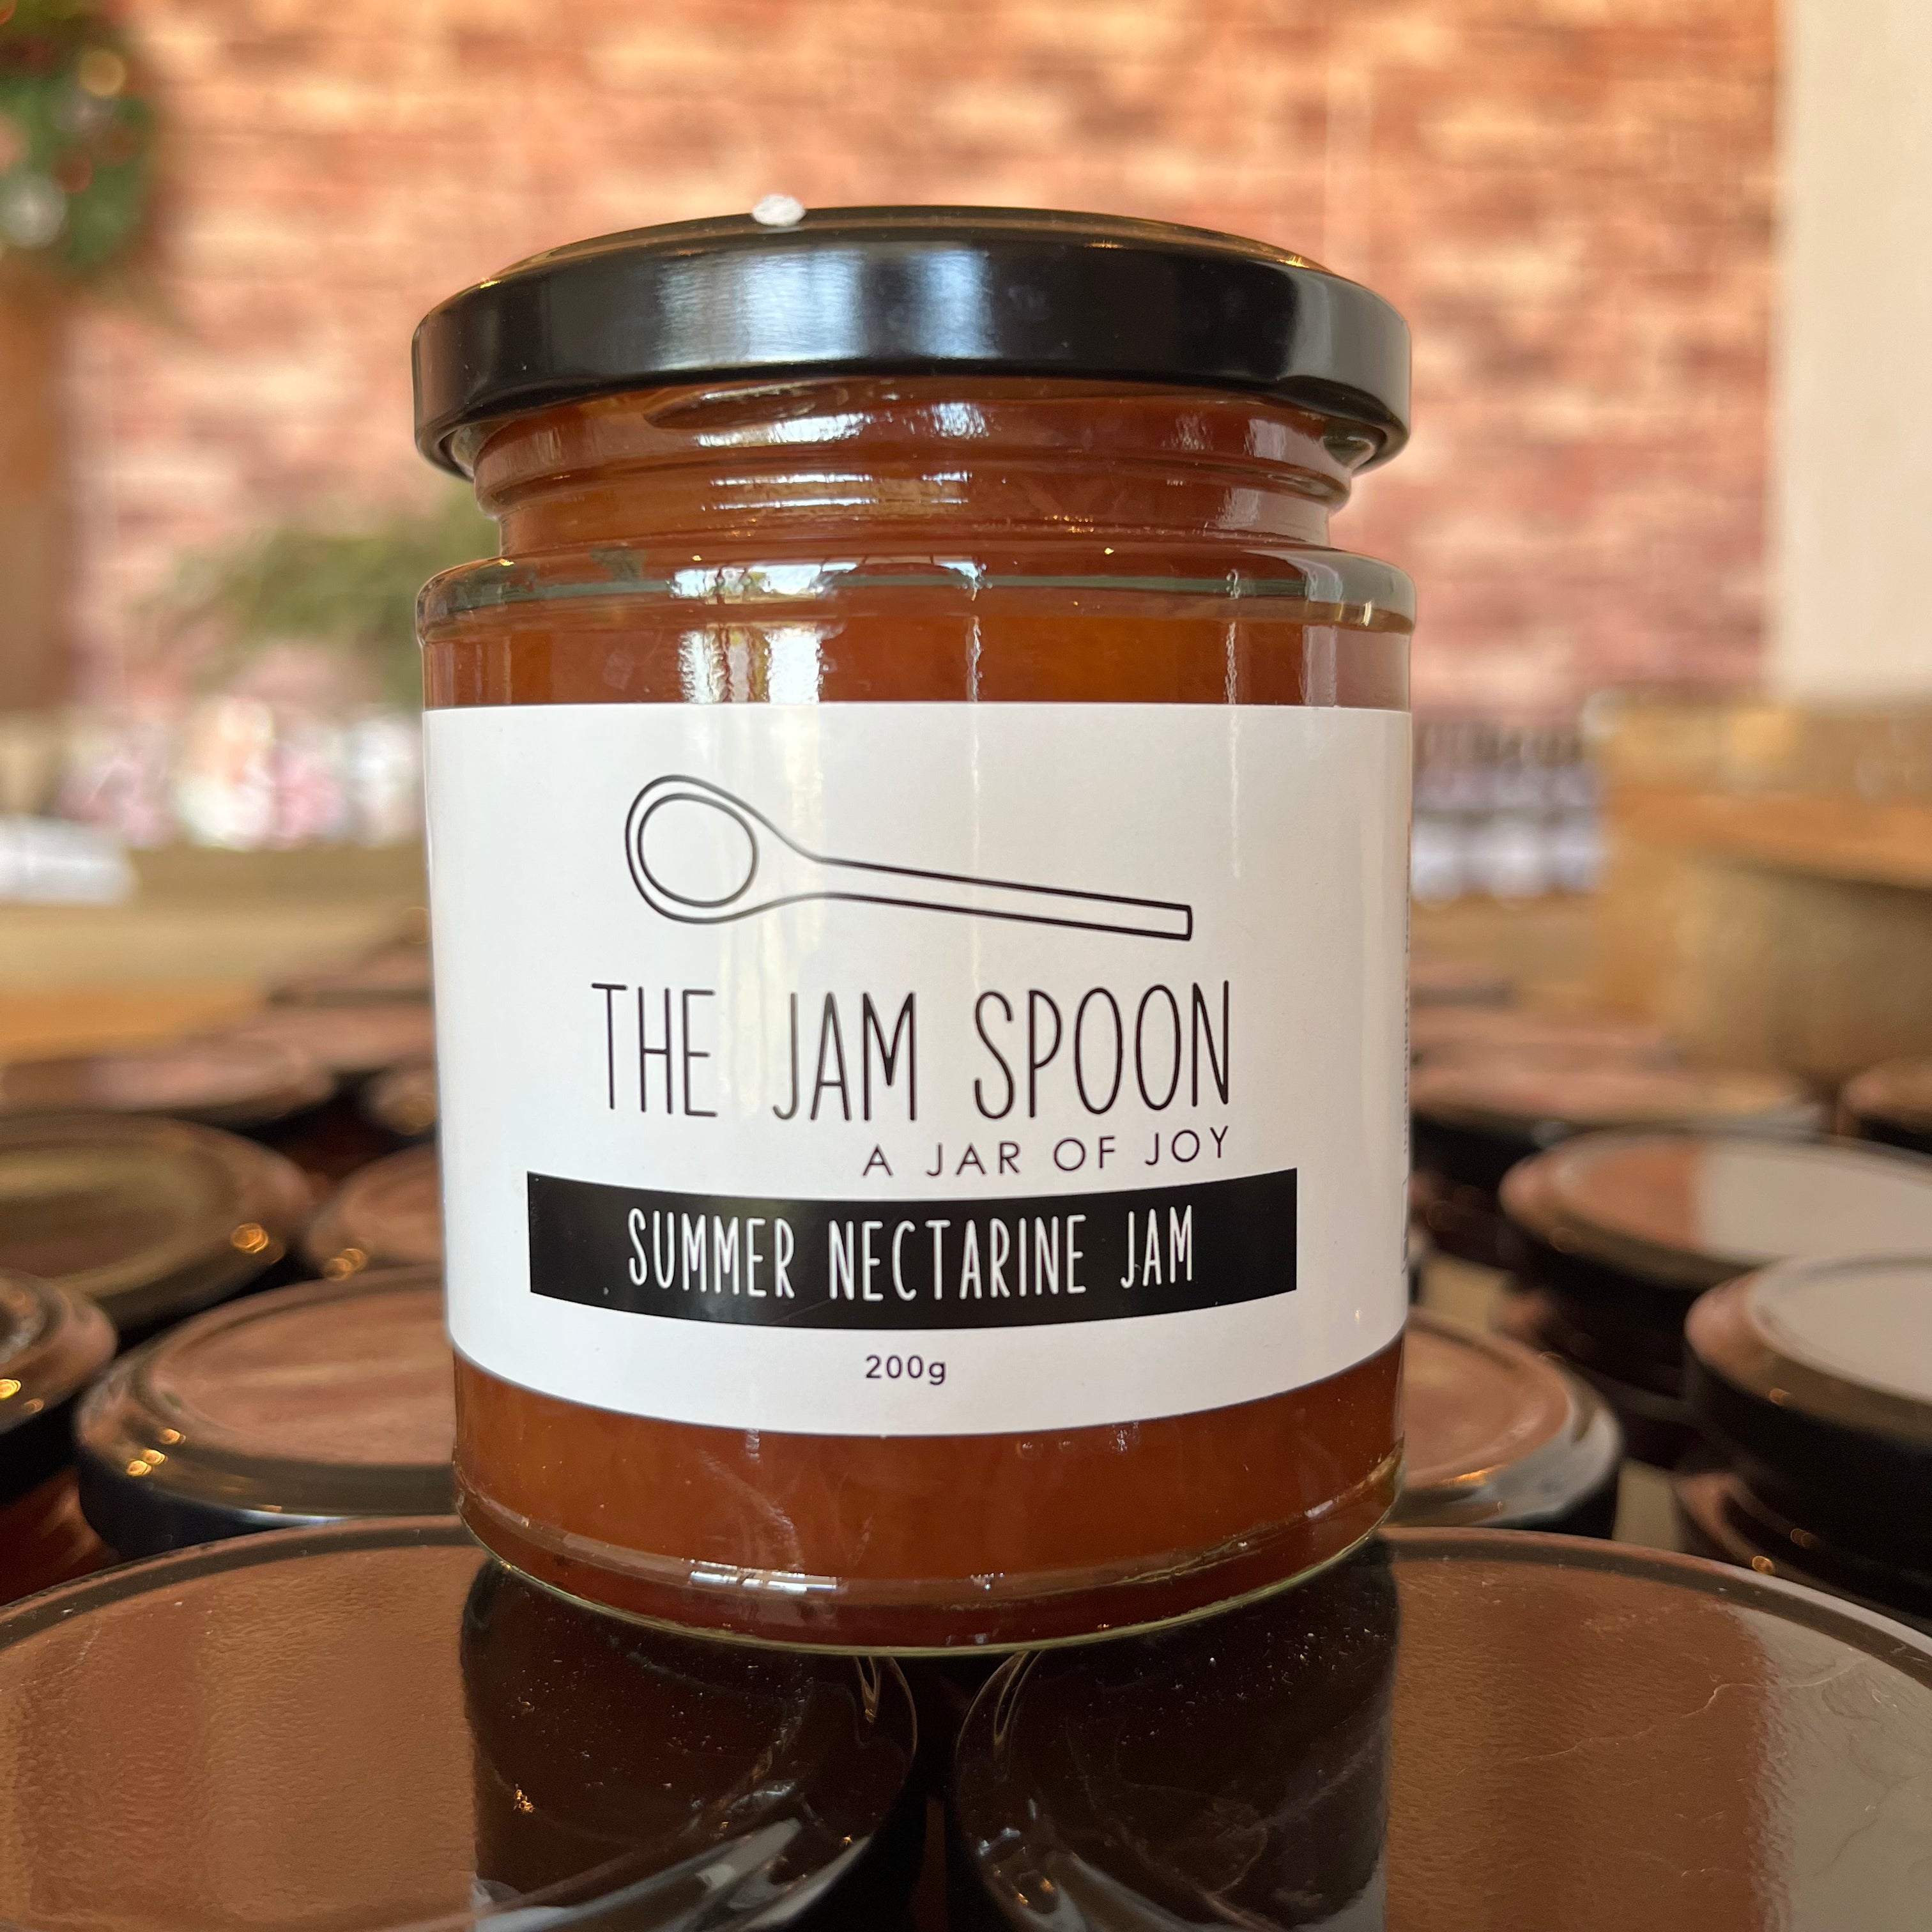 The Jam Spoon - Summer Delight Nectarine Jam